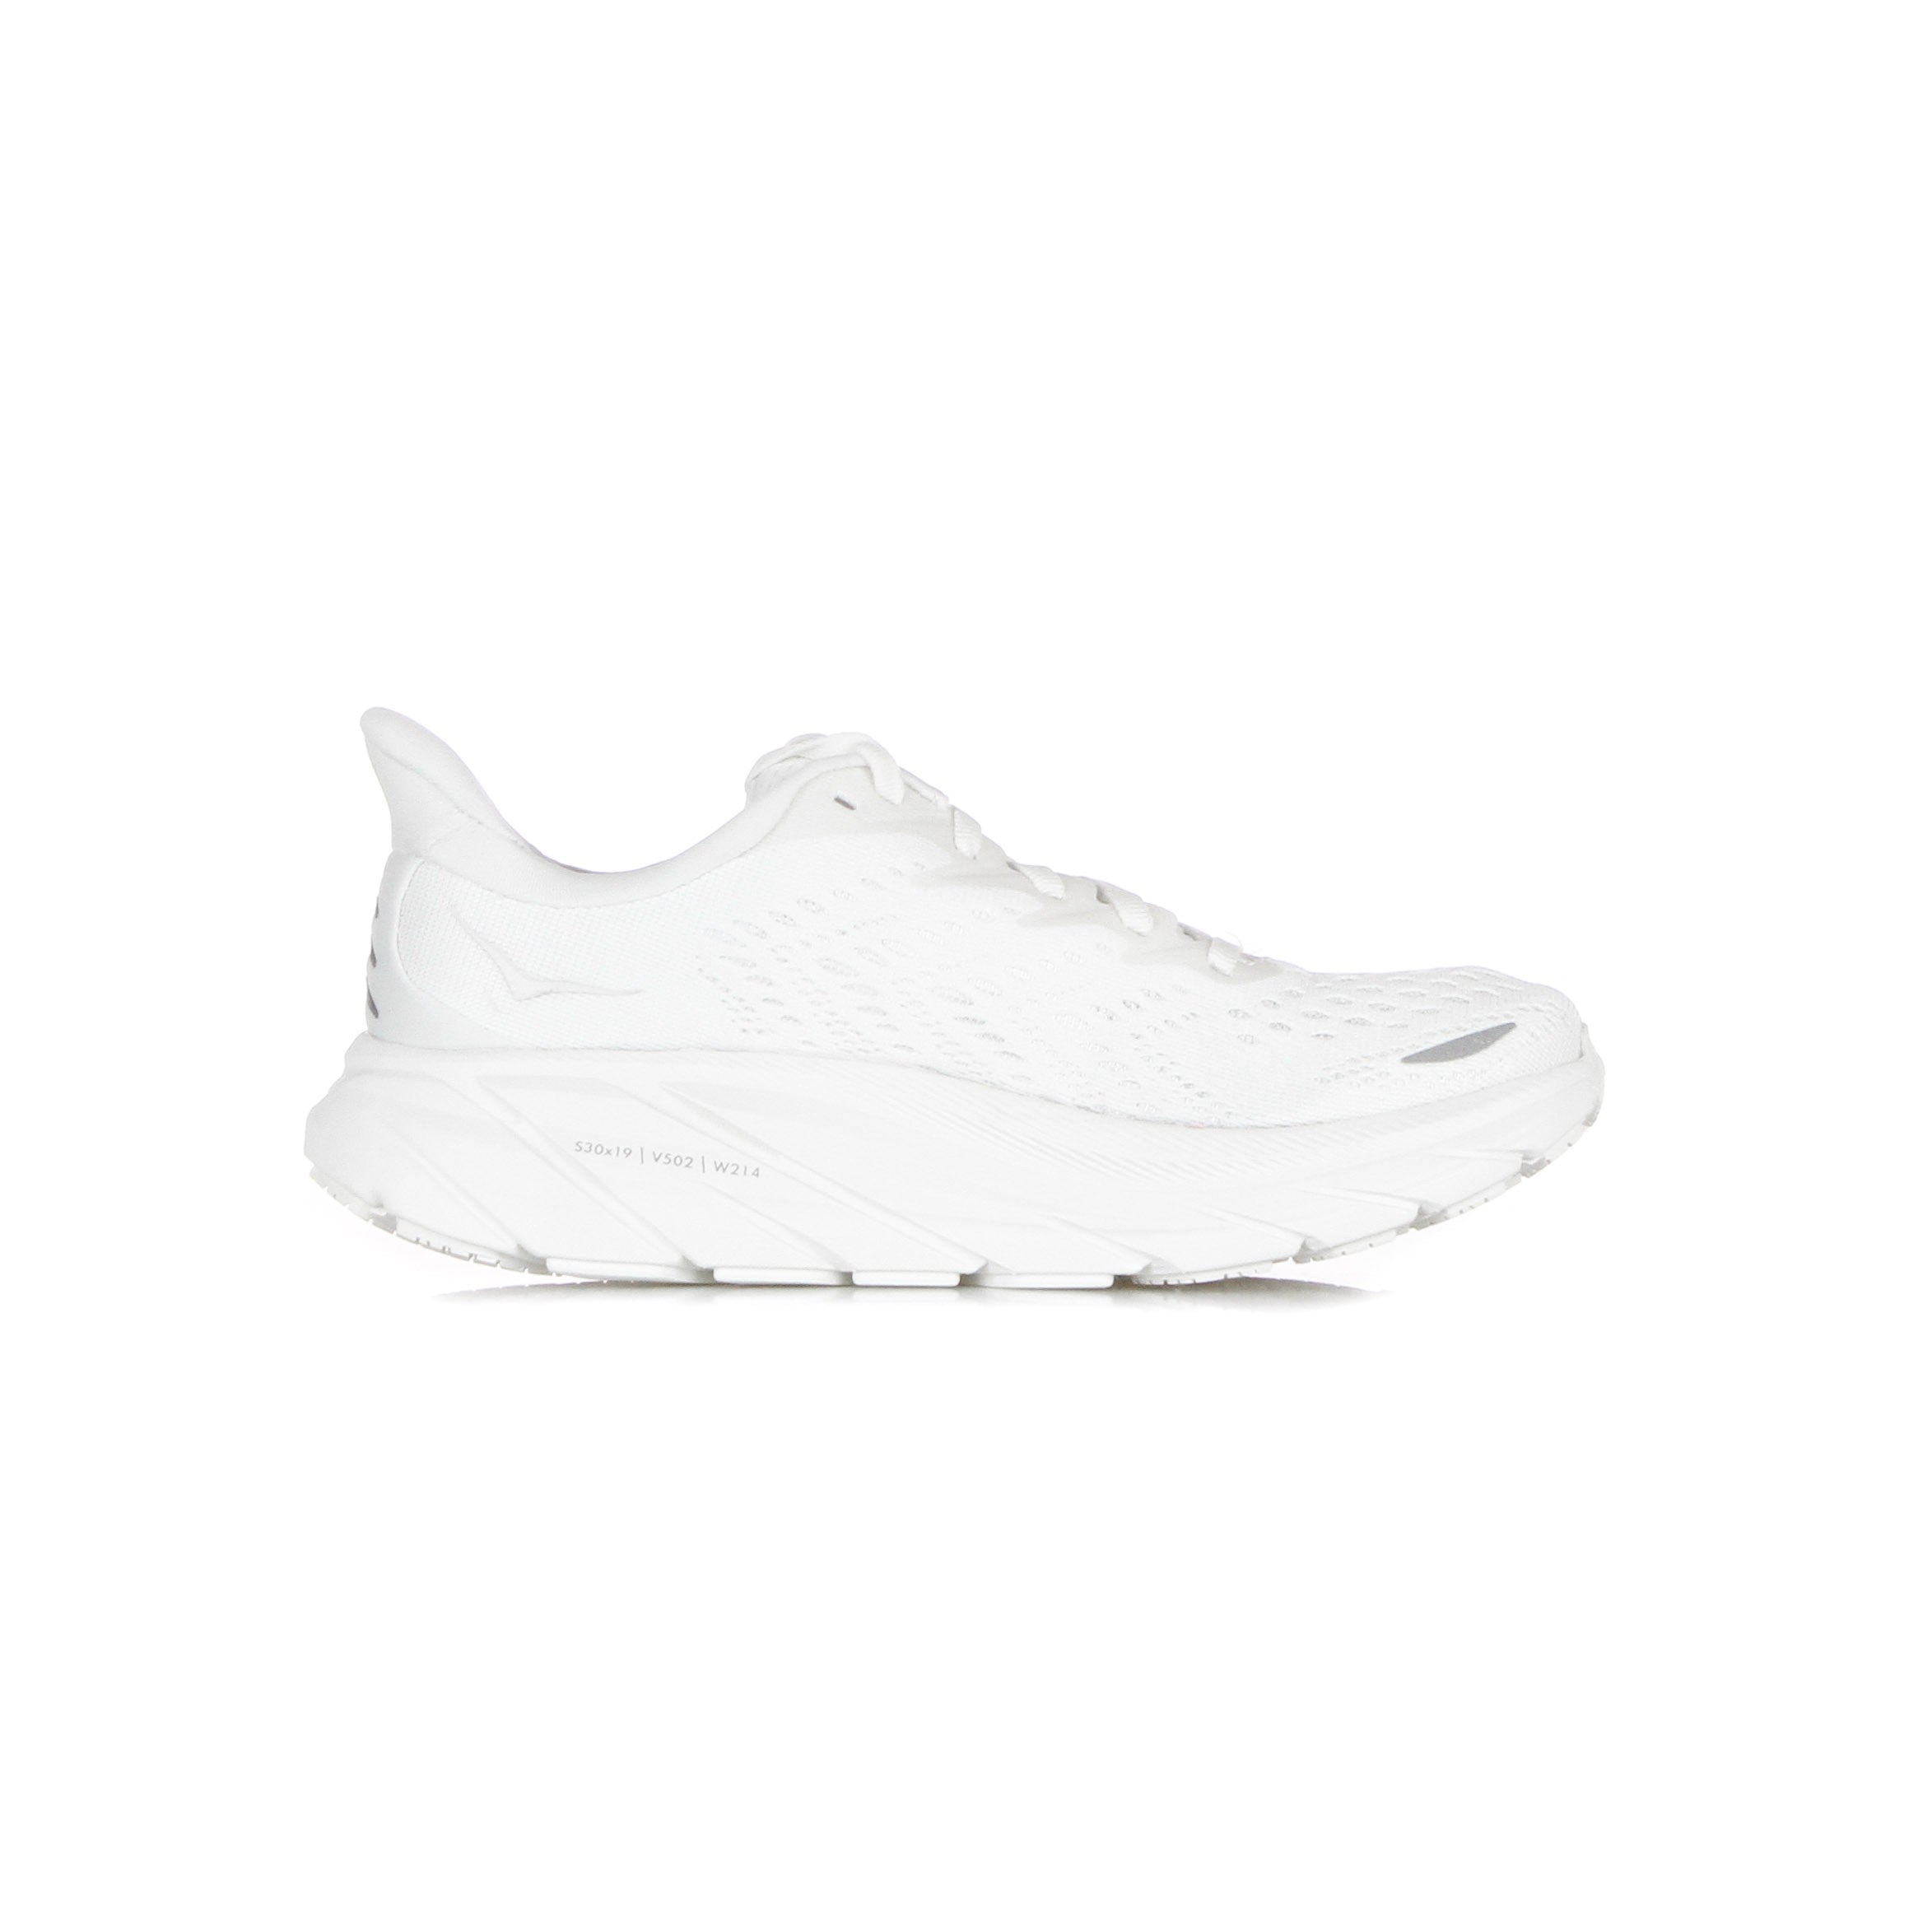 Clifton 8 White/white Women's Outdoor Shoe